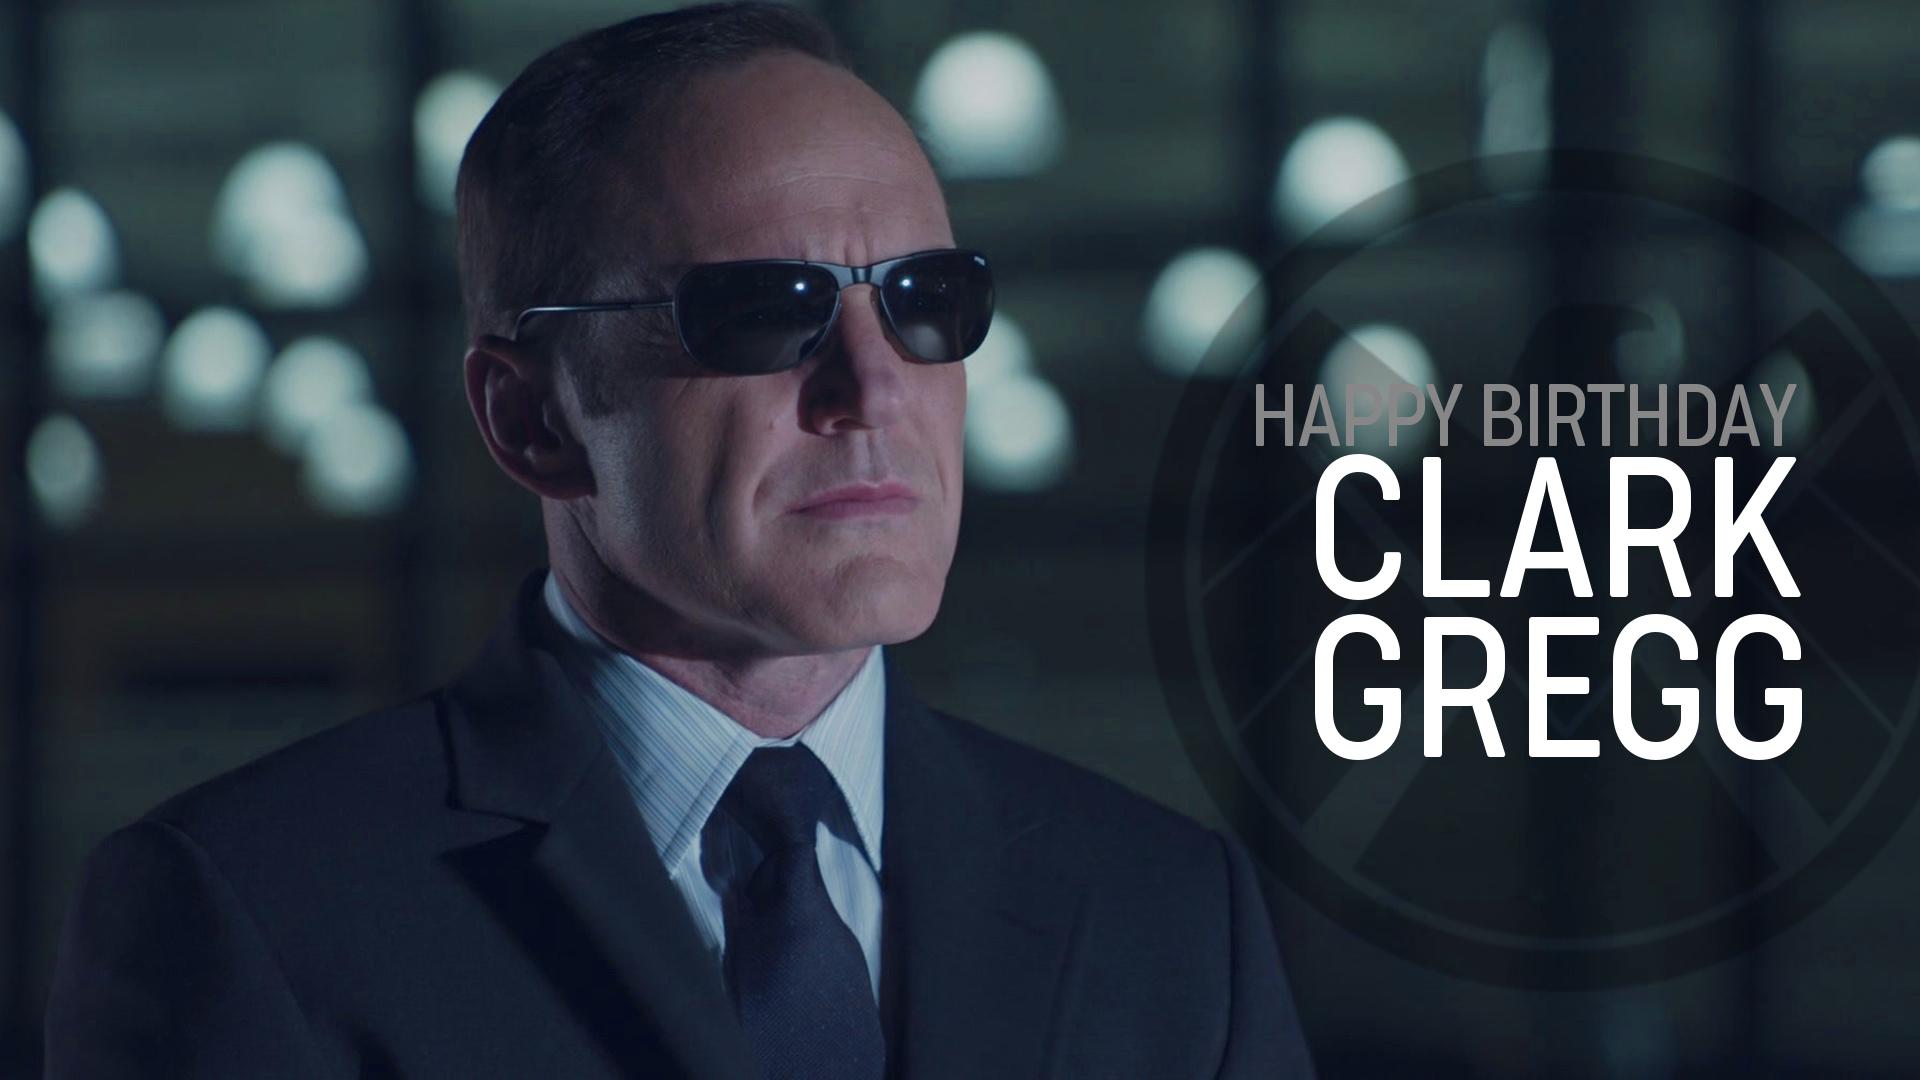 Der Schauspieler von Agent Phil Coulson,
CLARK GREGG
wurde gestern 57 Jahre alt.

Happy Birthday ! 